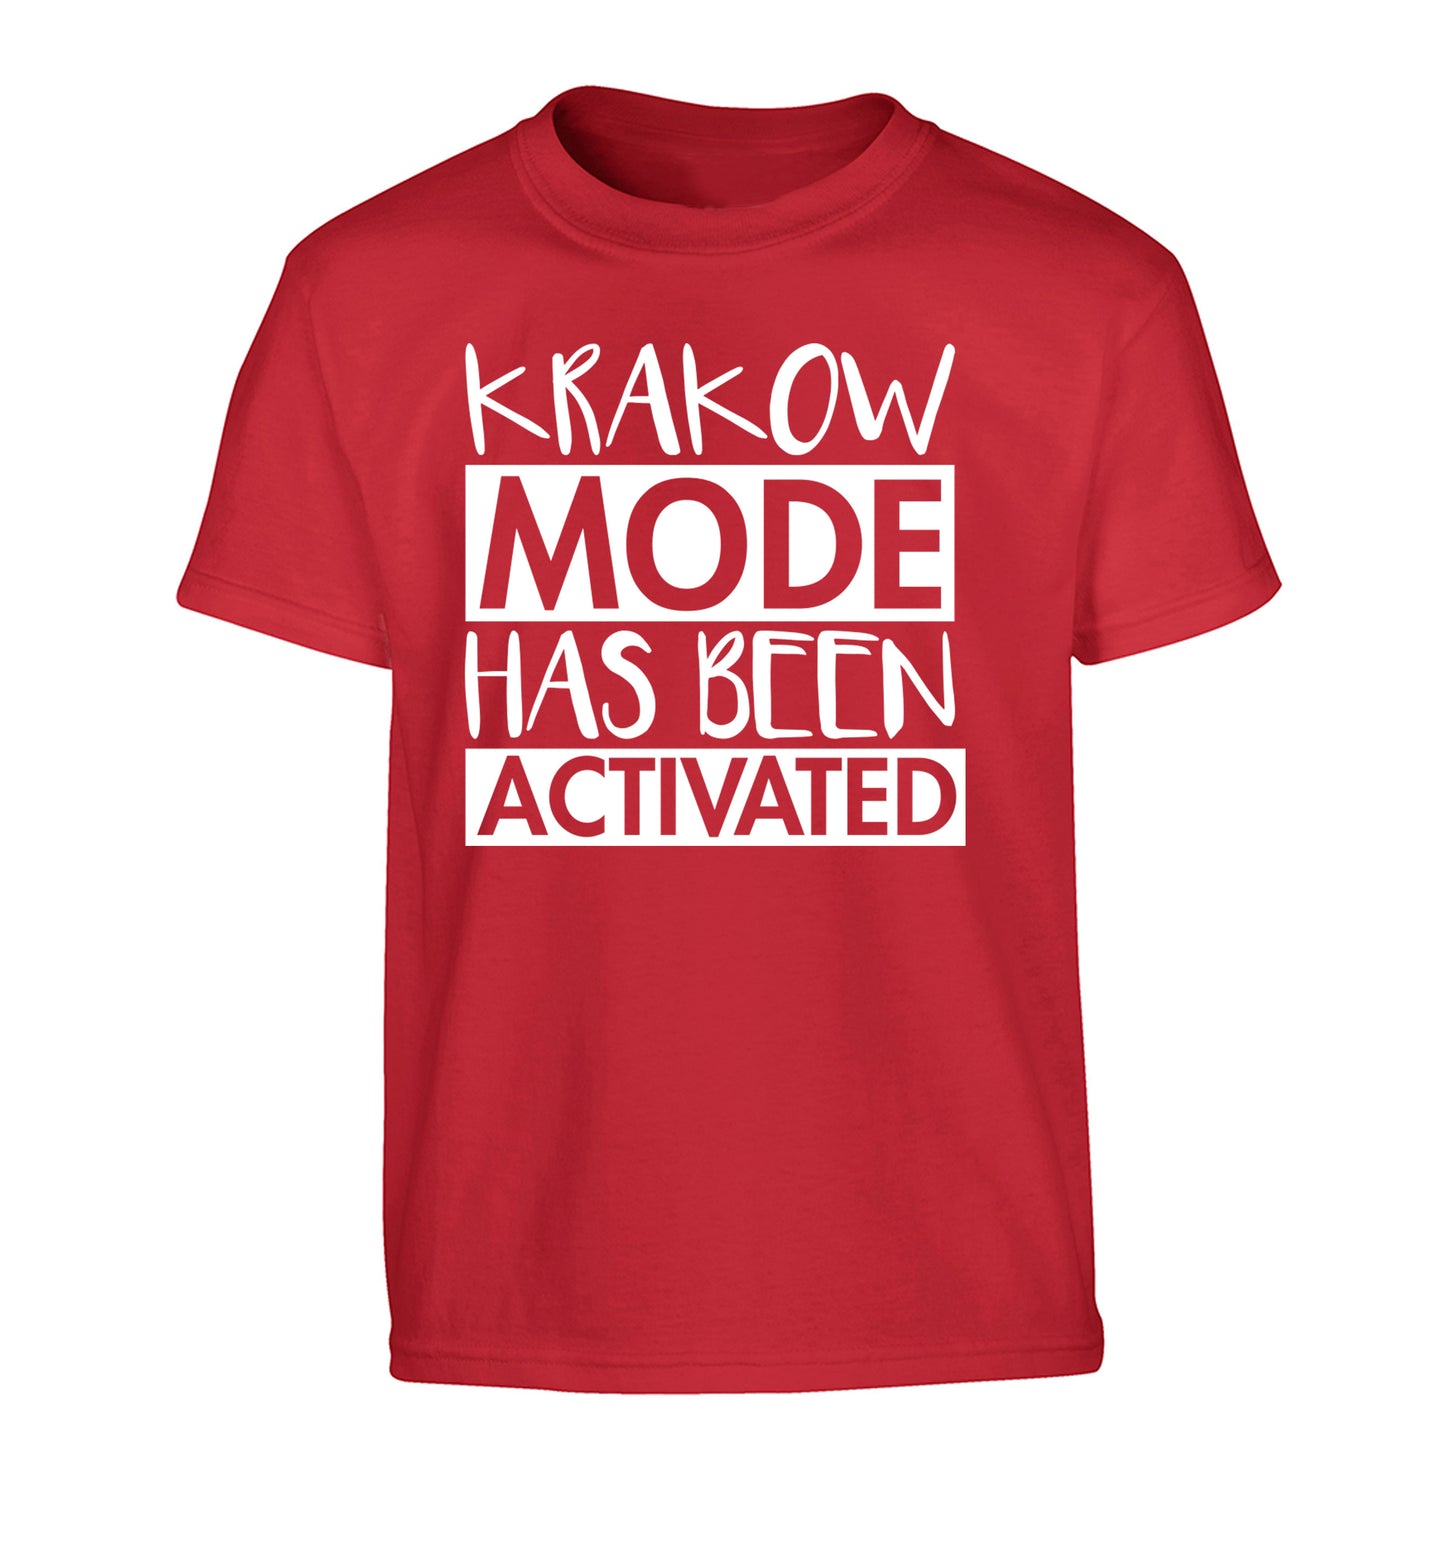 Krakow mode has been activated Children's red Tshirt 12-13 Years